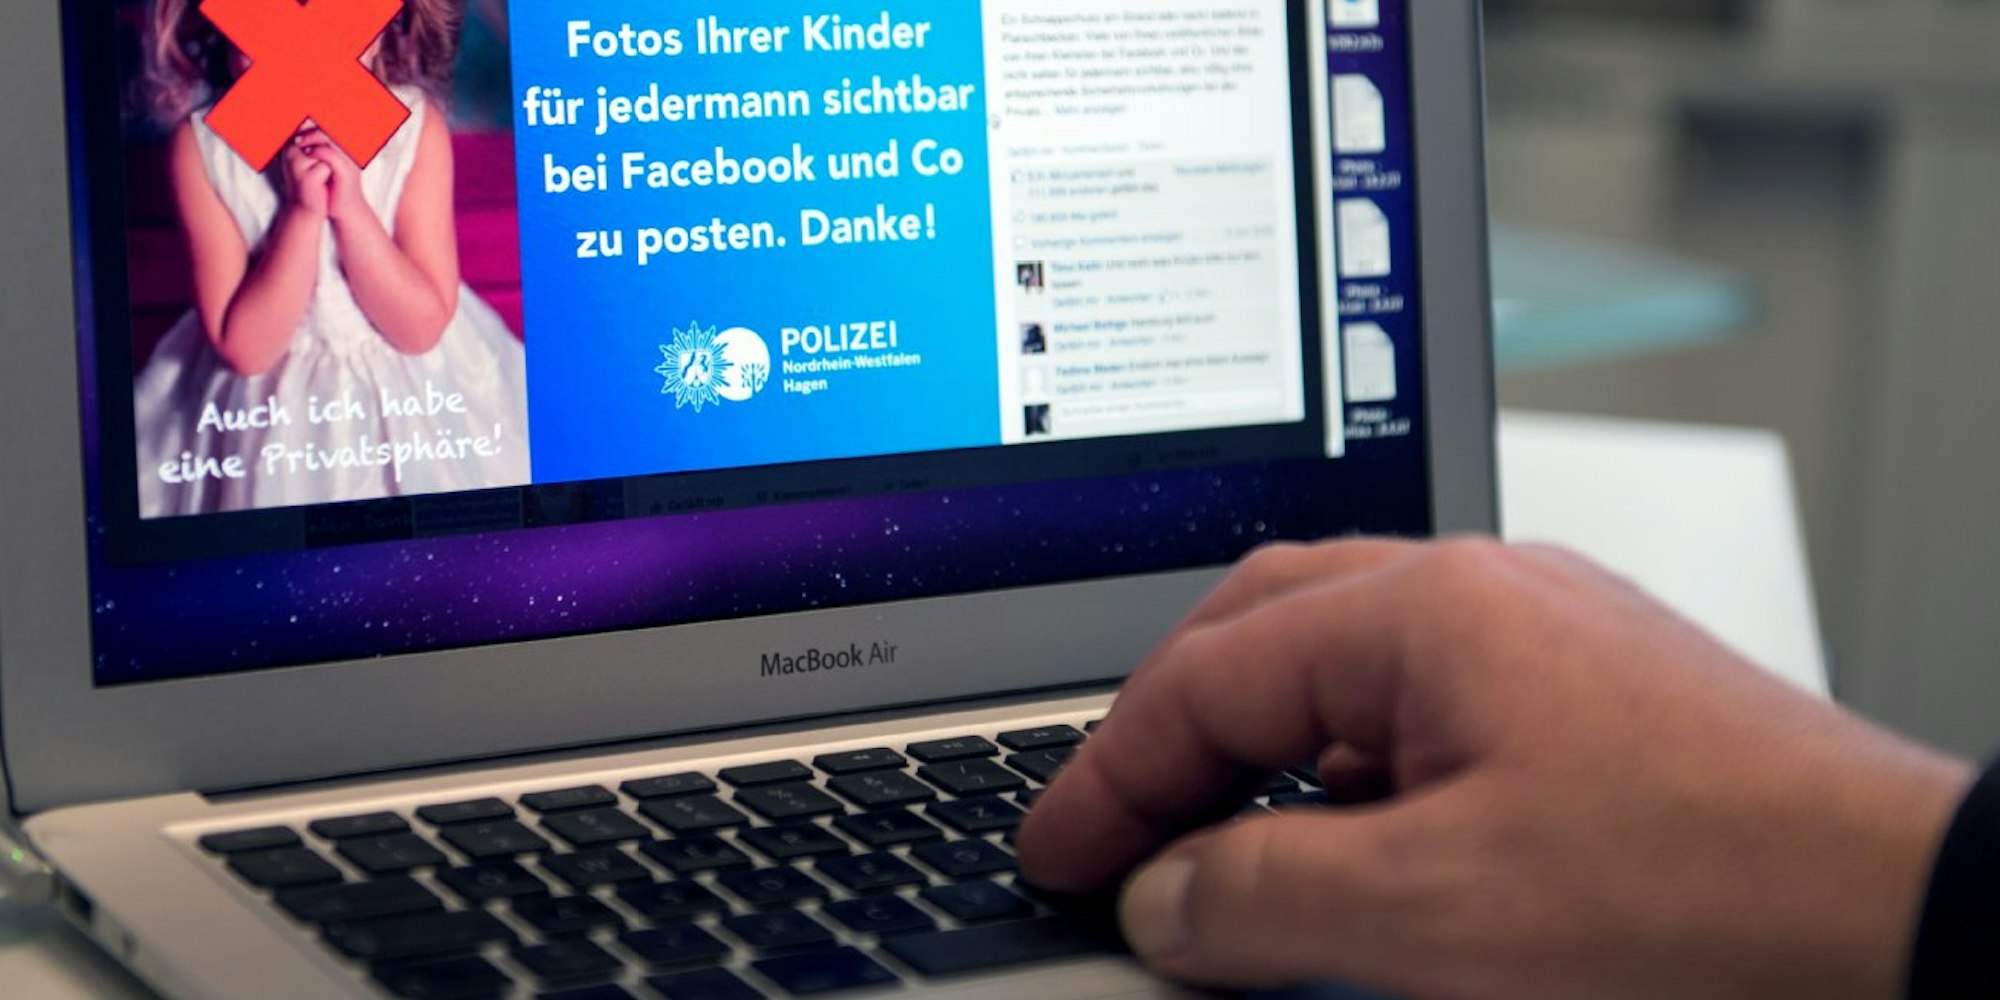 Die Polizei der Stadt Hagen hat vor Kinderfotos im Internet gewarnt.